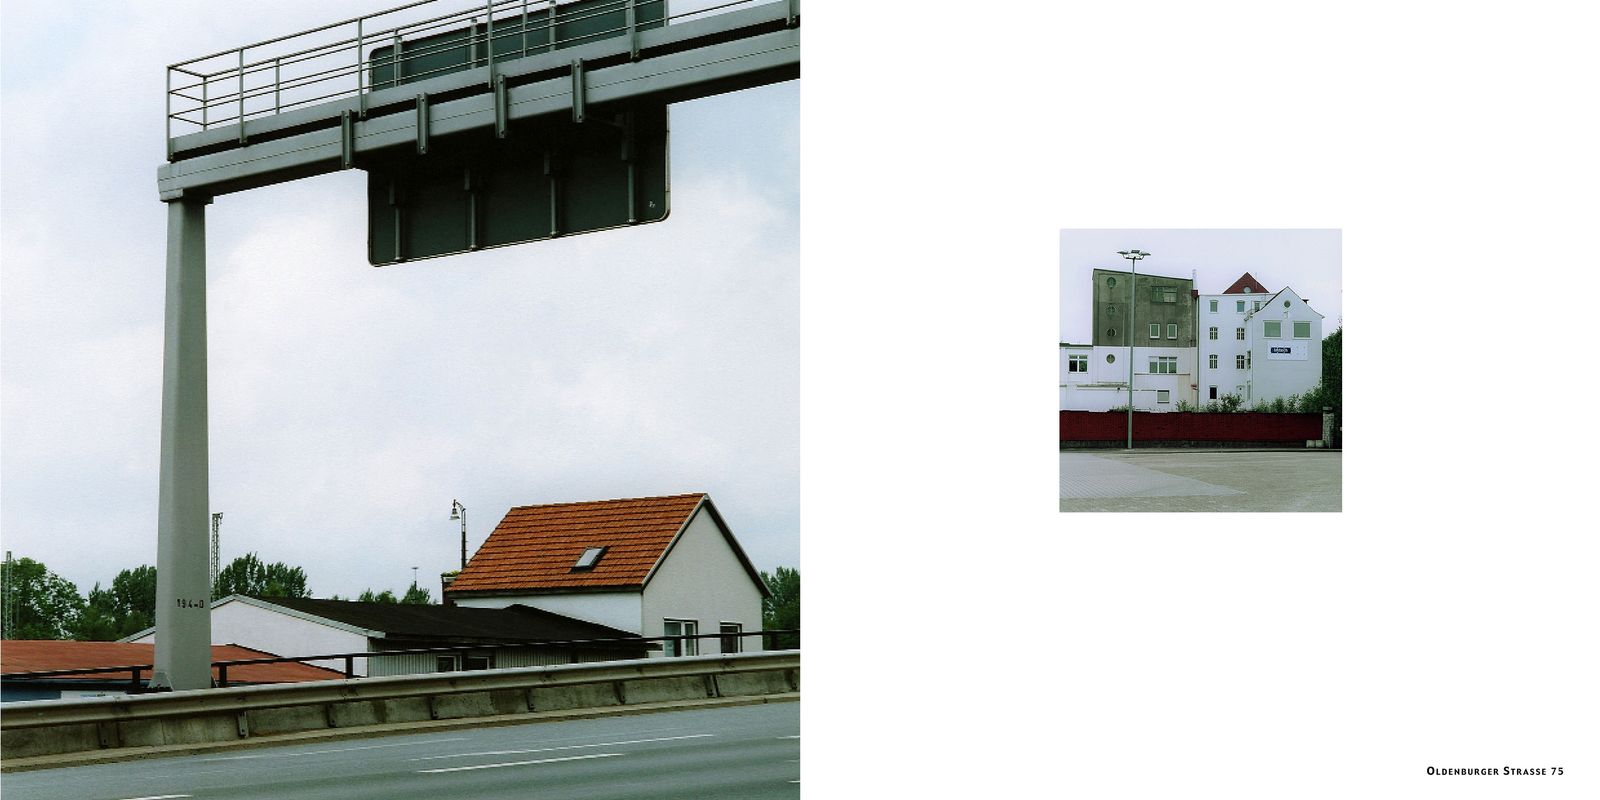 © Anja Morisse - Image from the Bremen — Leben in und mit einer Stadt photography project